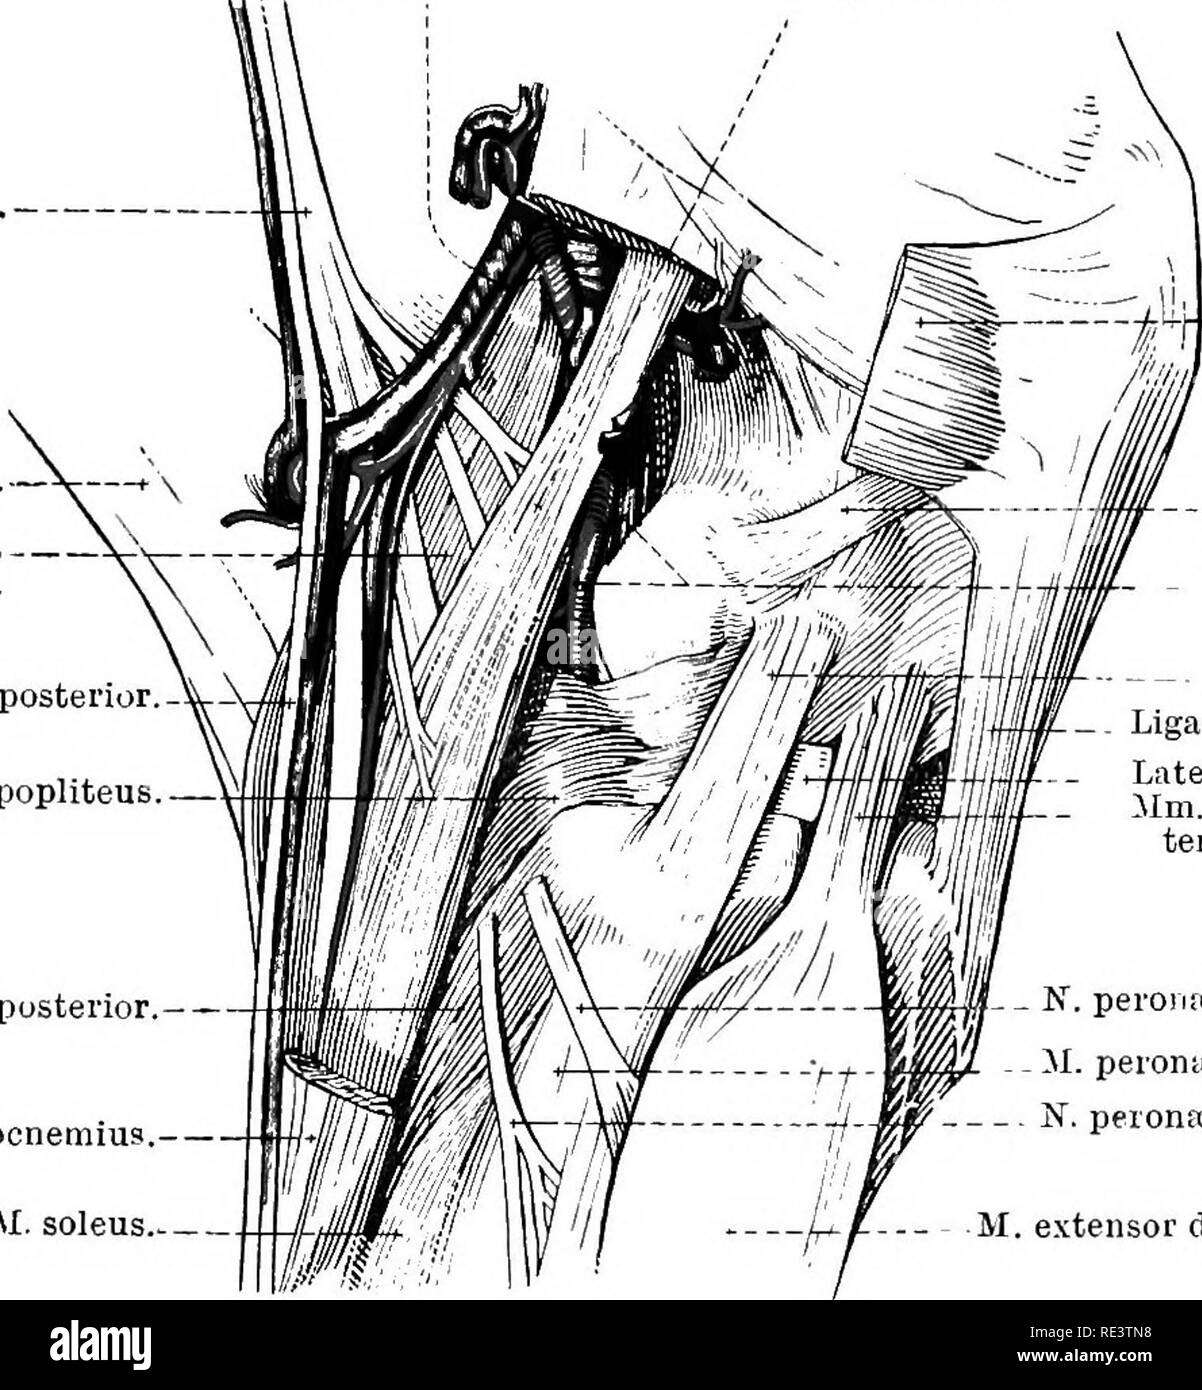 . La Anatomia Topografica degli arti del cavallo. Cavalli; fisiologia. Gli arti del HOESE 131 N. tibiale.-La componente tibiale 1 nervo, la più grande delle due divisioni di sciatico, è già stata seguita verso il basso la parte posteriore della coscia fino al punto in cui esso scompare tra i due capi del muscolo gastrocnemio. Il resto del suo corso è ora rivelato. Tra i capi del gastrocnemio il nervo entra in rapporto con il muscolo plantaris, il bordo mediale che lo segue da vicino fino a quando il livello del vertice del tubero ealcanei è raggiunto. A questo punto si suddivide nelle Foto Stock